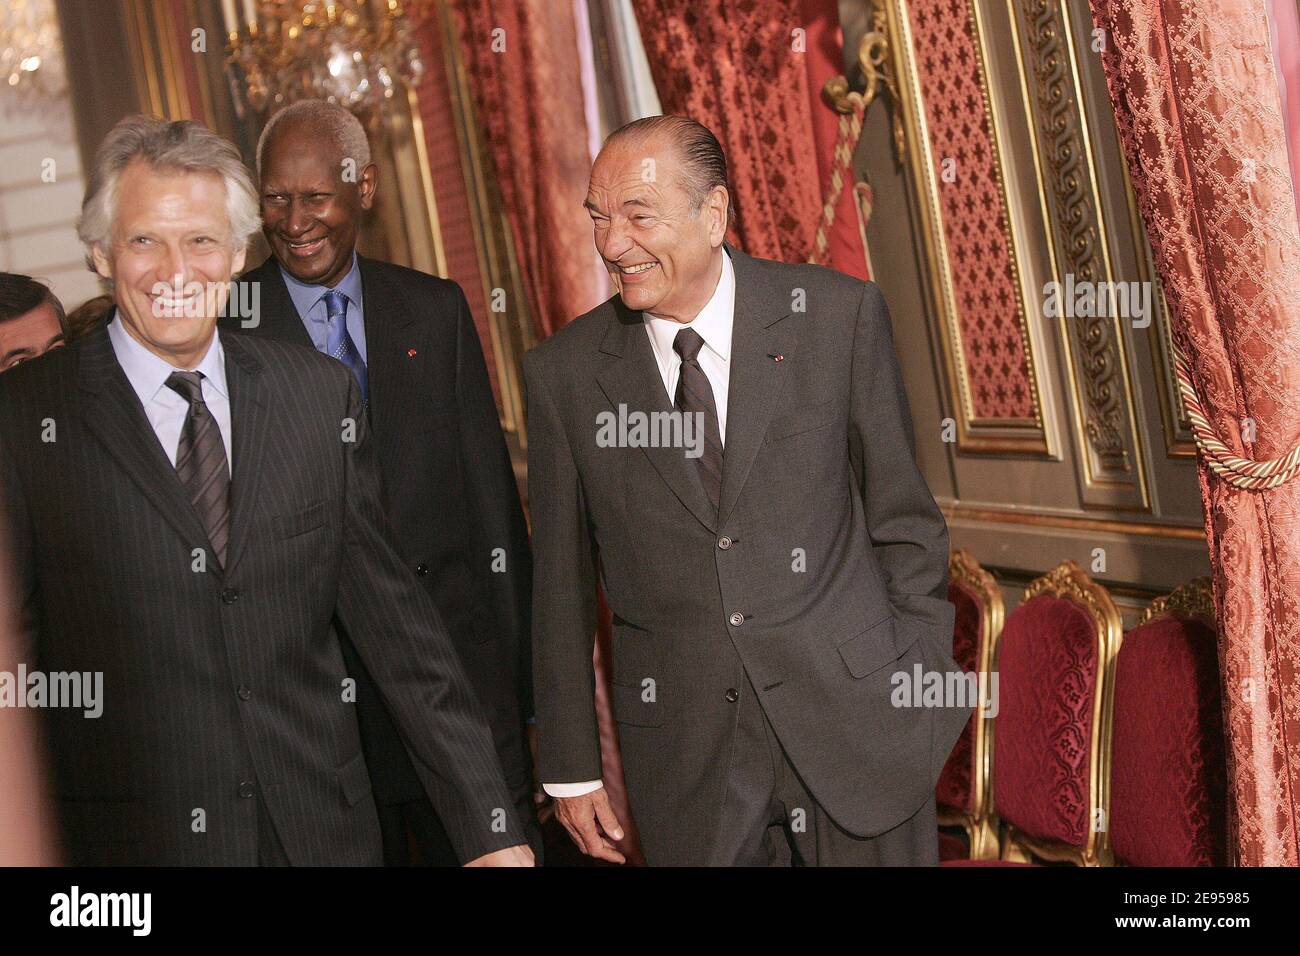 Le Président français Jacques Chirac, avec le Premier ministre Dominique de Villepin, arrive pour recevoir les salutations du nouvel an des représentants d'États étrangers qui ont des accords spéciaux avec la France, à l'Elysée à Paris, en France, le 10 janvier 2006. Photo de Laurent Zabulon/ABACAPRESS.COM Banque D'Images